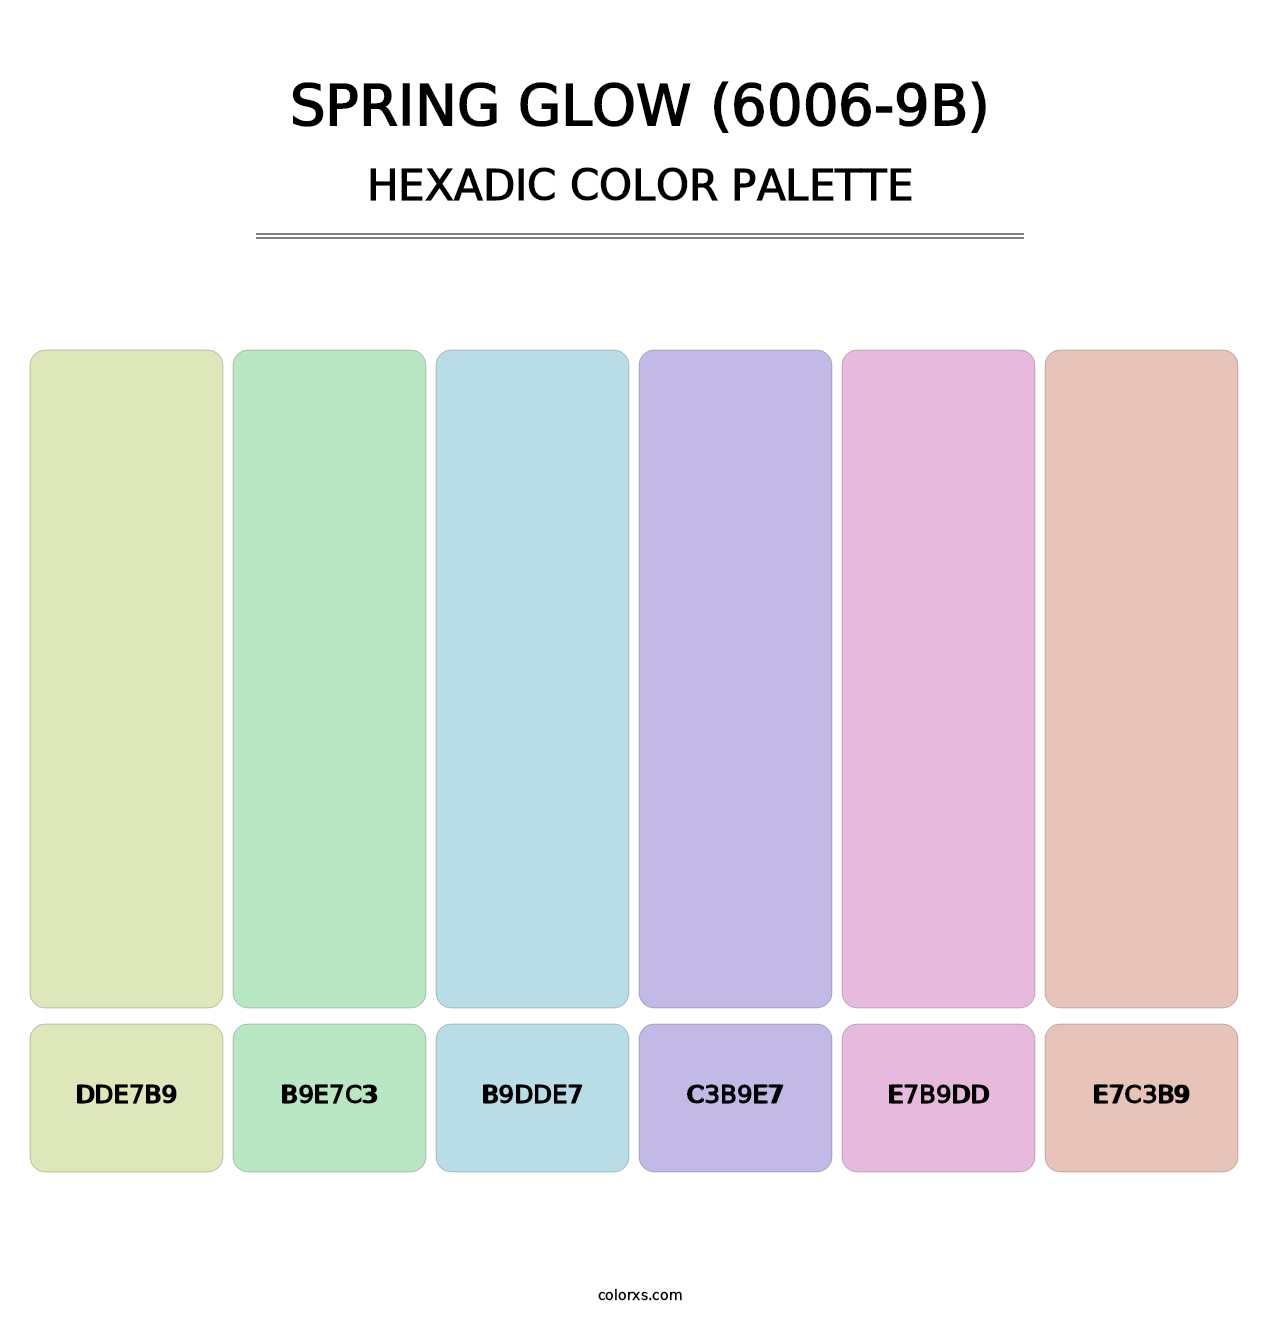 Spring Glow (6006-9B) - Hexadic Color Palette